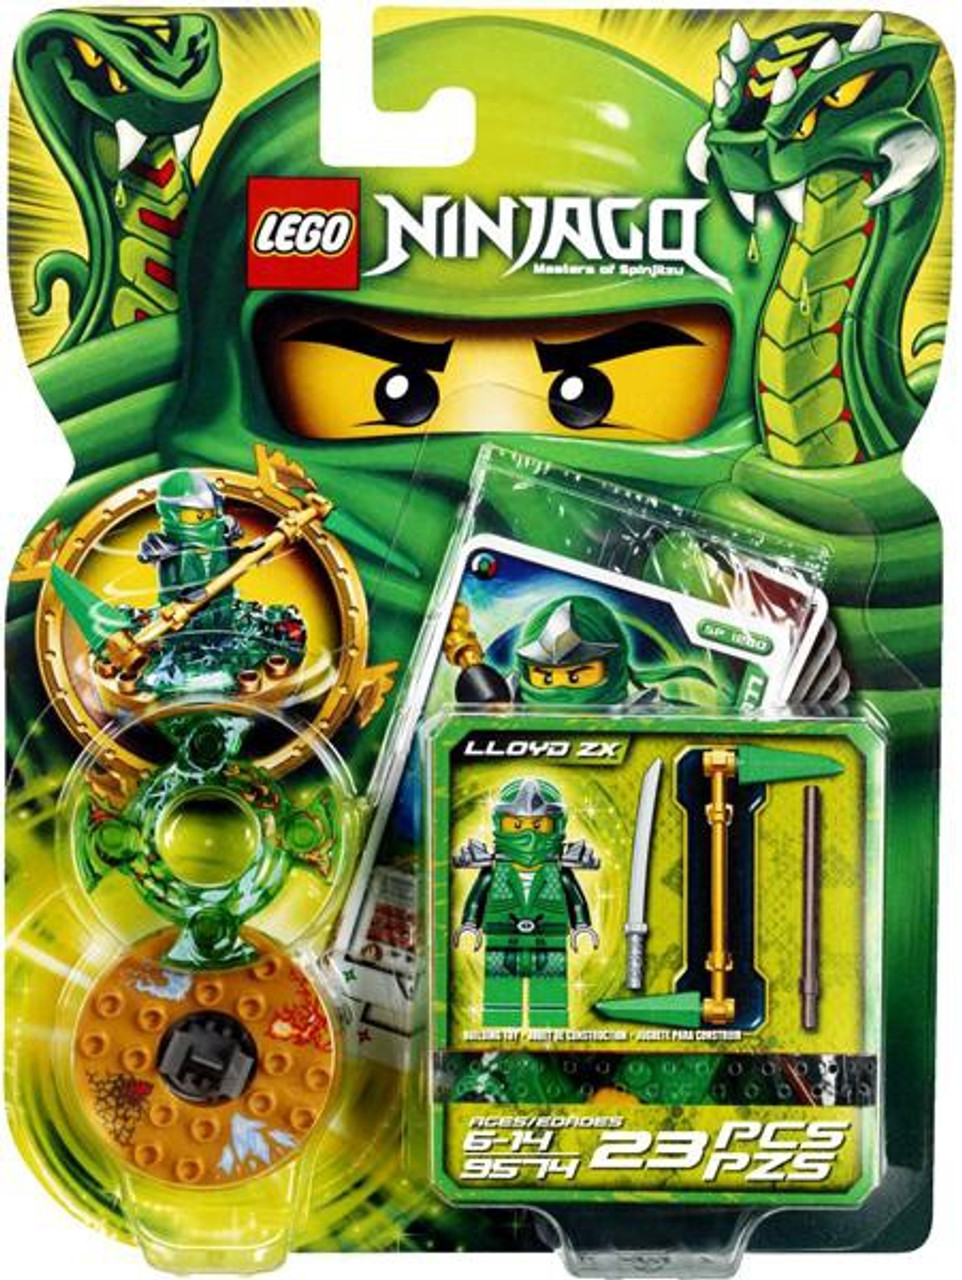 Lego Ninjago Spinjitzu Spinners Lloyd Zx Set 9574 Toywiz - lego ninjago green ninja kx roblox